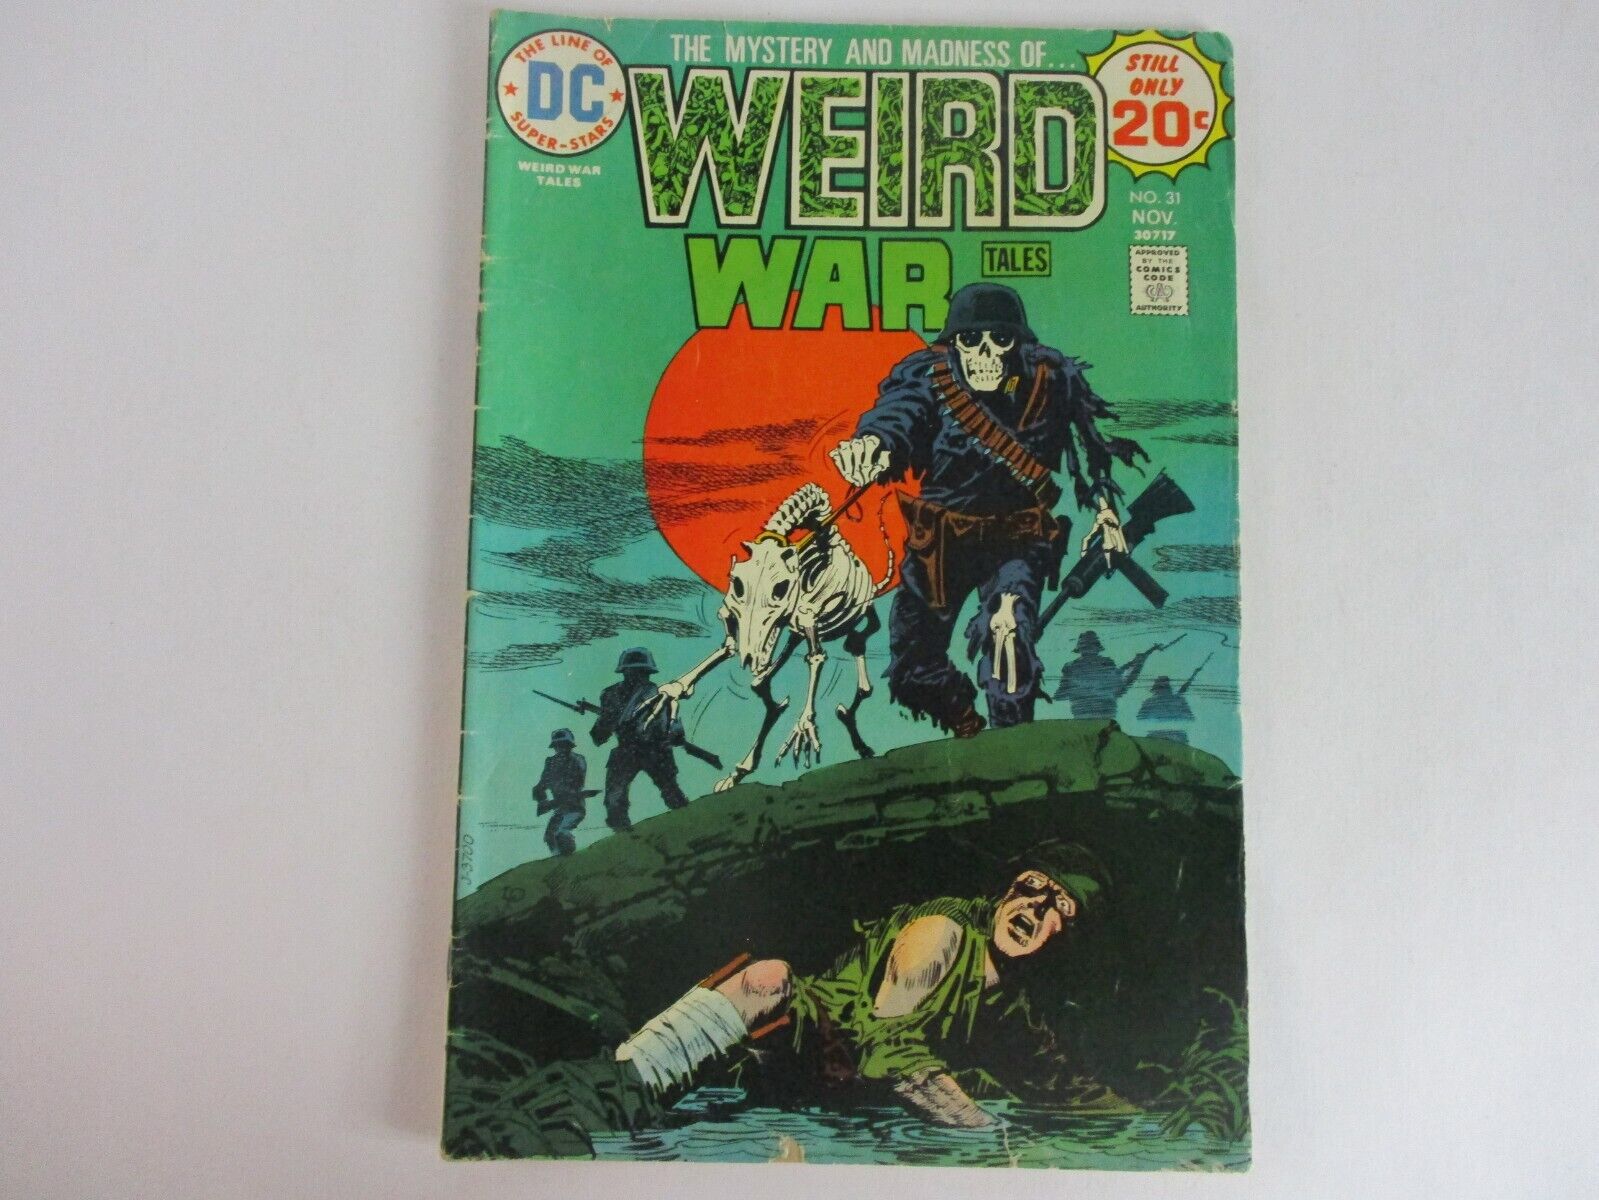 DC Comics WEIRD WAR TALES #31 November 1974